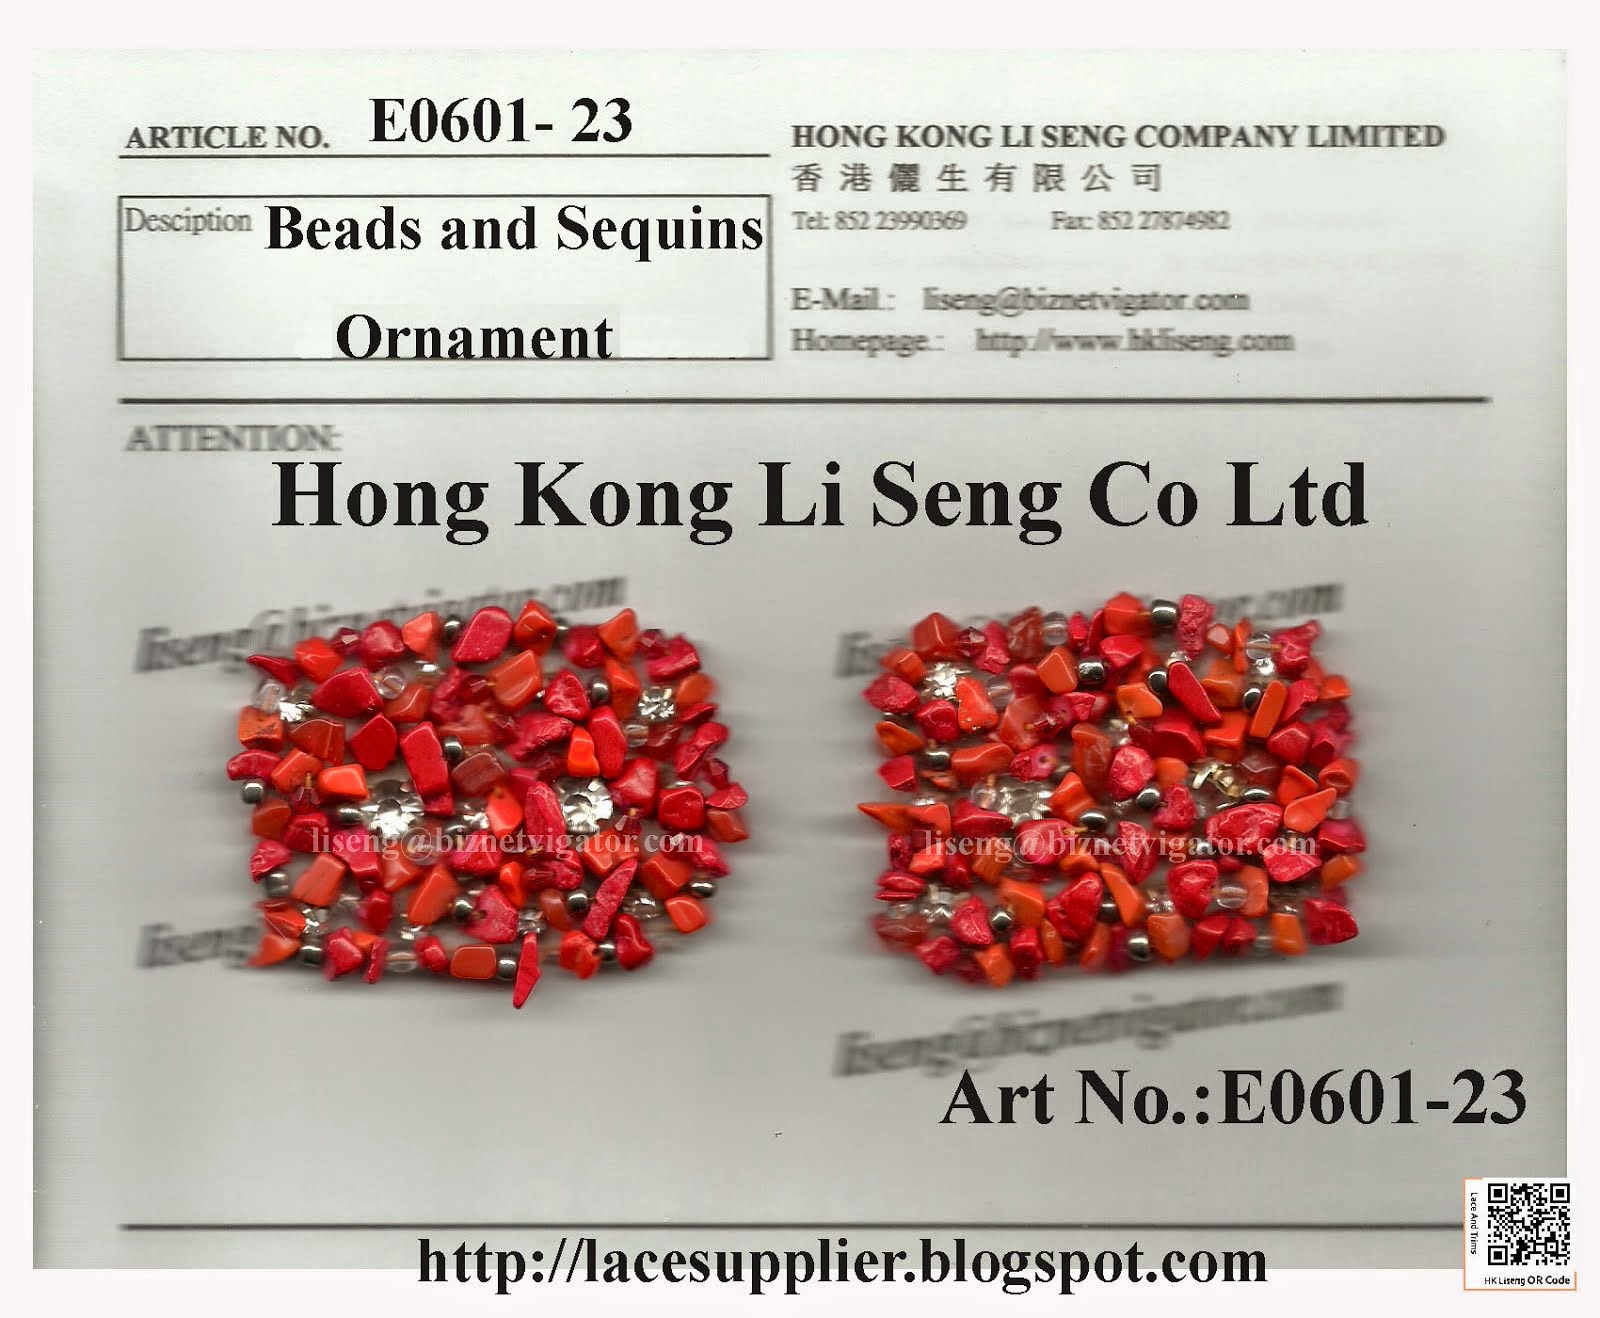 Beads and Sequins Ornament Manufacturer Wholesaler Supplier - Hong Kong Li Seng Co Ltd